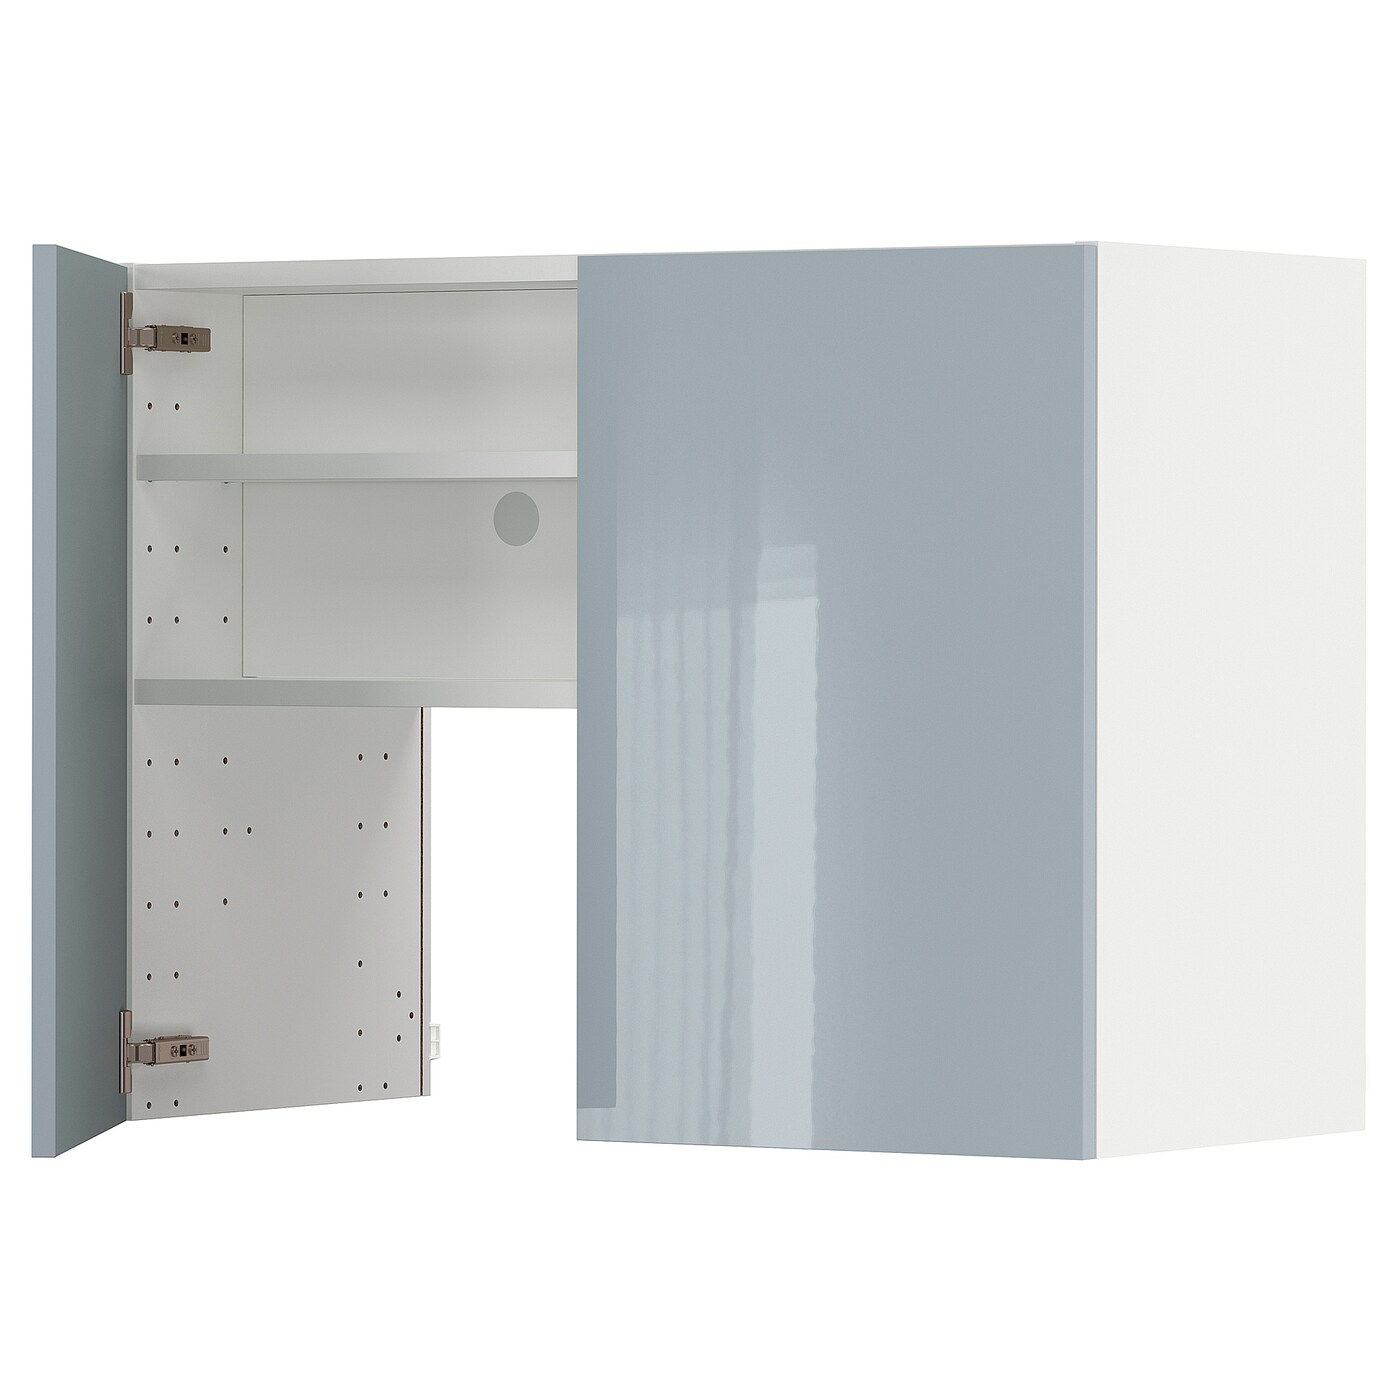 Навесной шкаф с полкой - METOD IKEA/ МЕТОД ИКЕА, 60х80 см, белый/светло-голубой